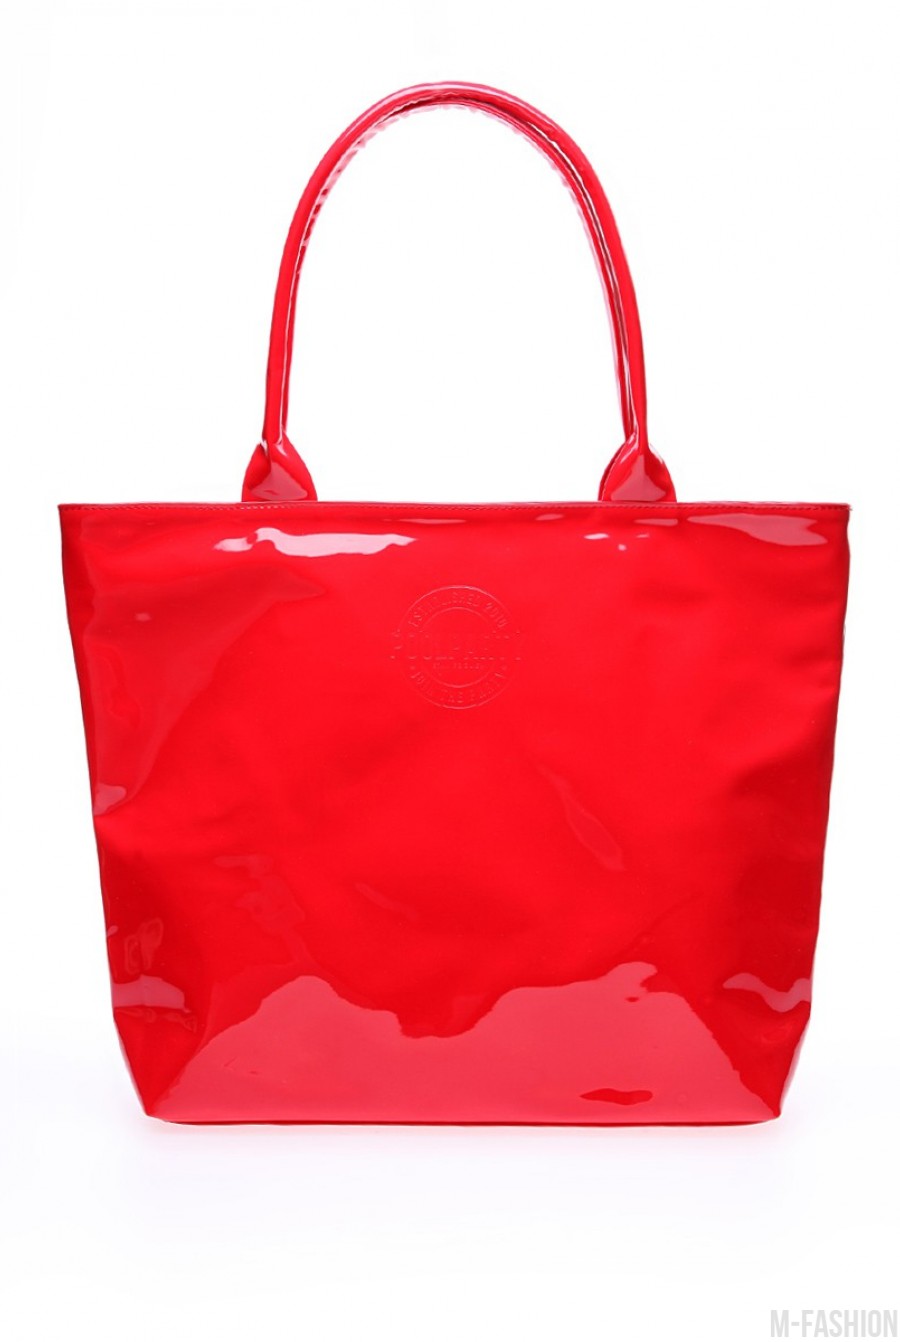 Красная лаковая сумочка для яркого образа - Фото 1